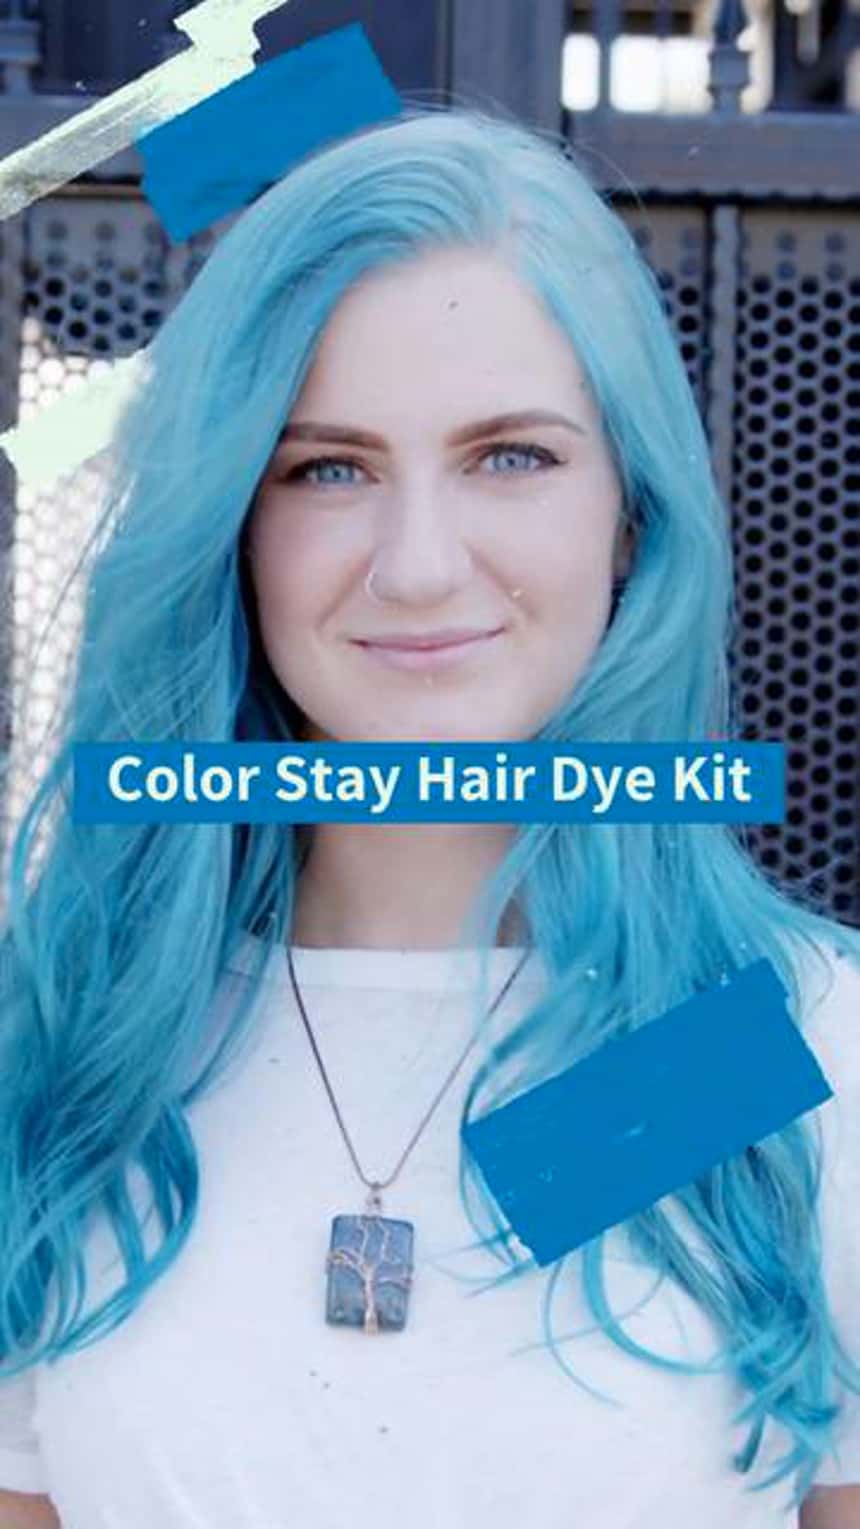 파란 머리를 한 사람의 TikTok 제품 데모. 이미지에 입력된 \